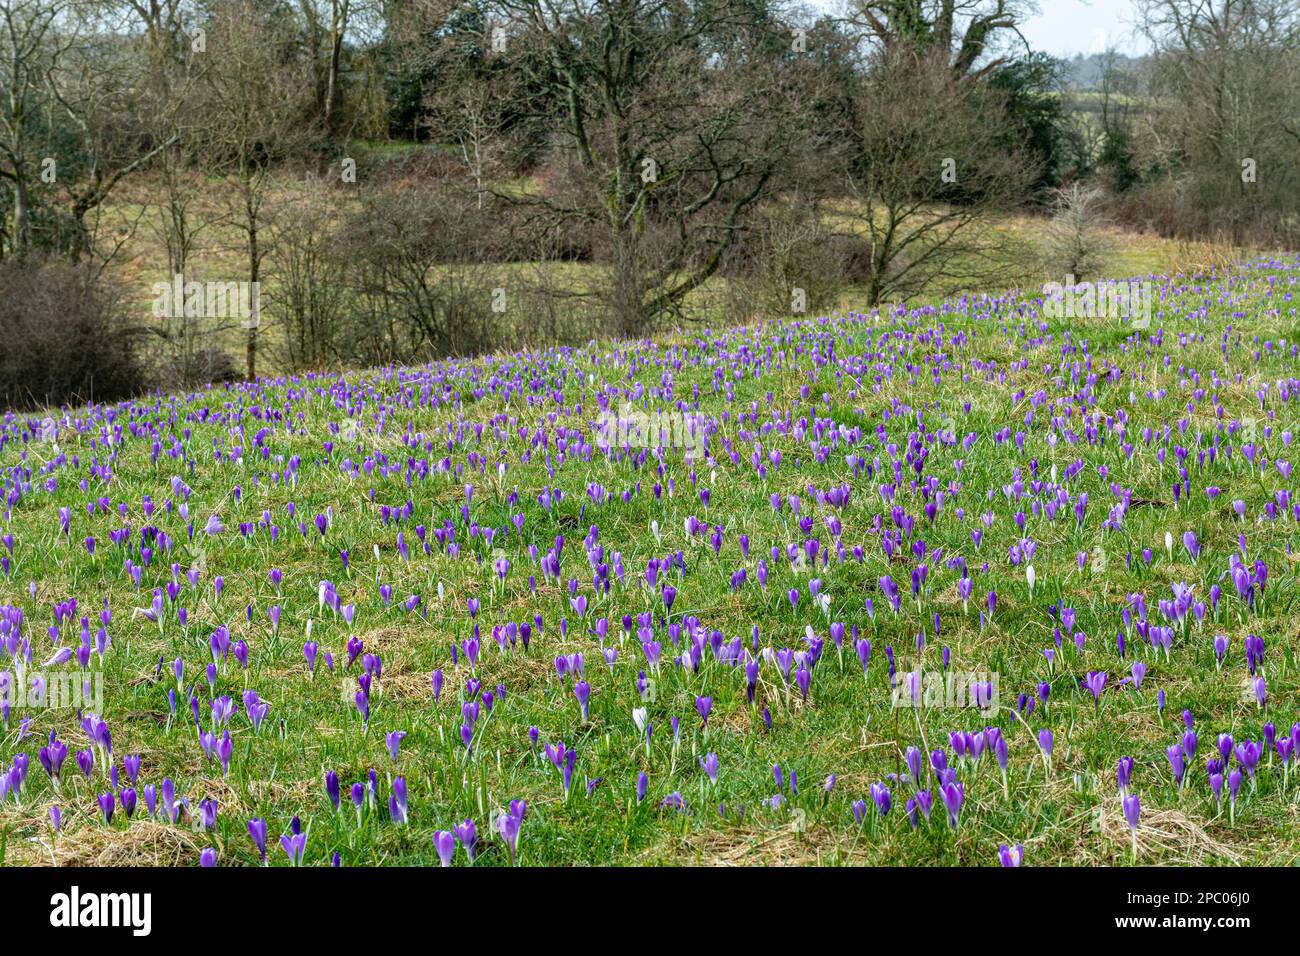 Inkpen Crocus Field in March with flowering crocuses, view of the nature reserve in West Berkshire, England, UK. Crocus vernus, spring crocus Stock Photo